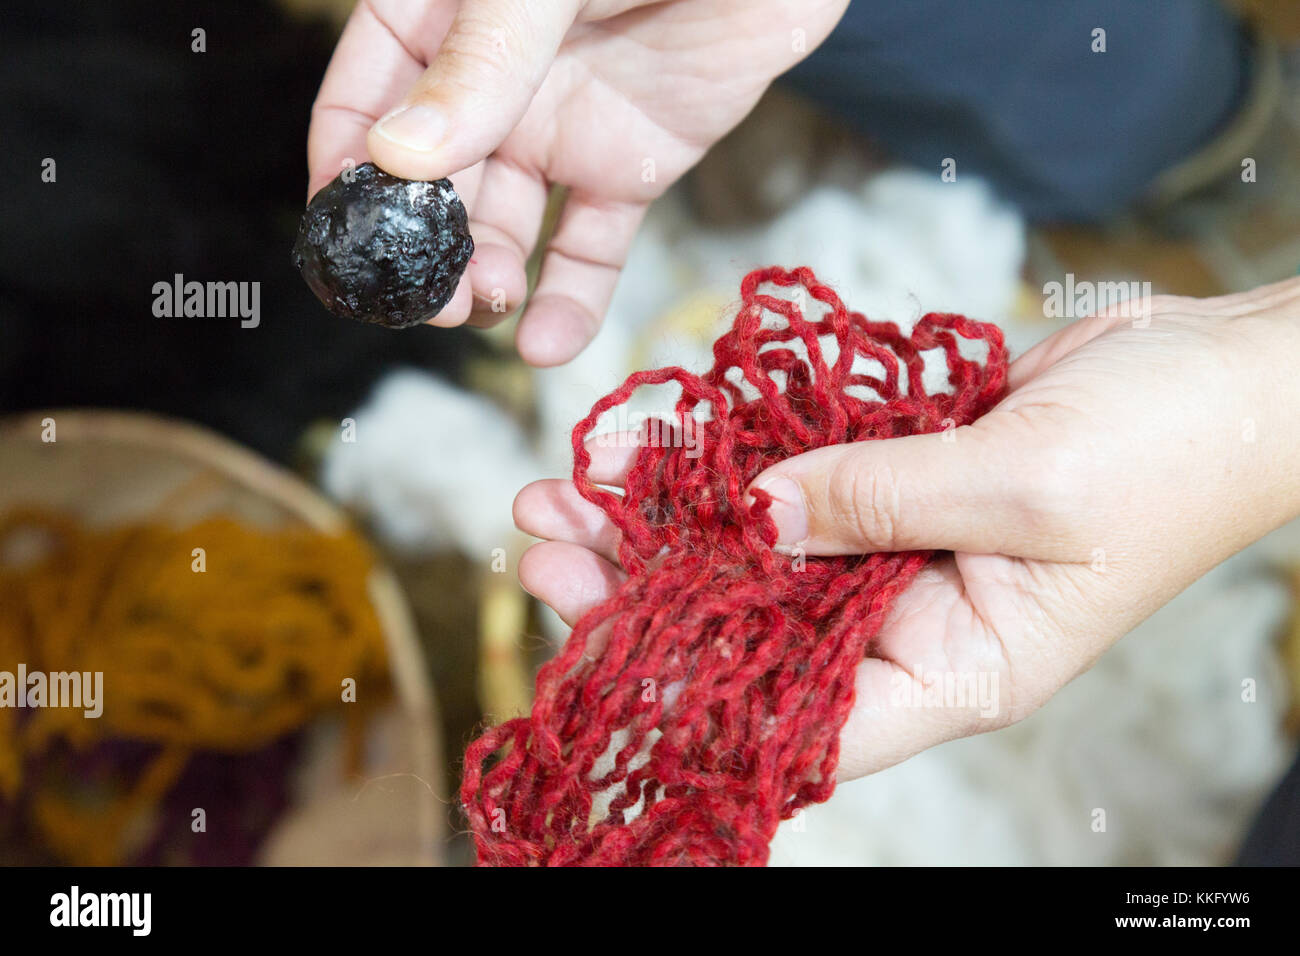 La culture de l'Equateur - une boule de teinture de cochenille traditionnellement utilisés pour teindre la laine rouge, et la laine, dans le tissage traditionnel, Equateur, Amérique du Sud Banque D'Images